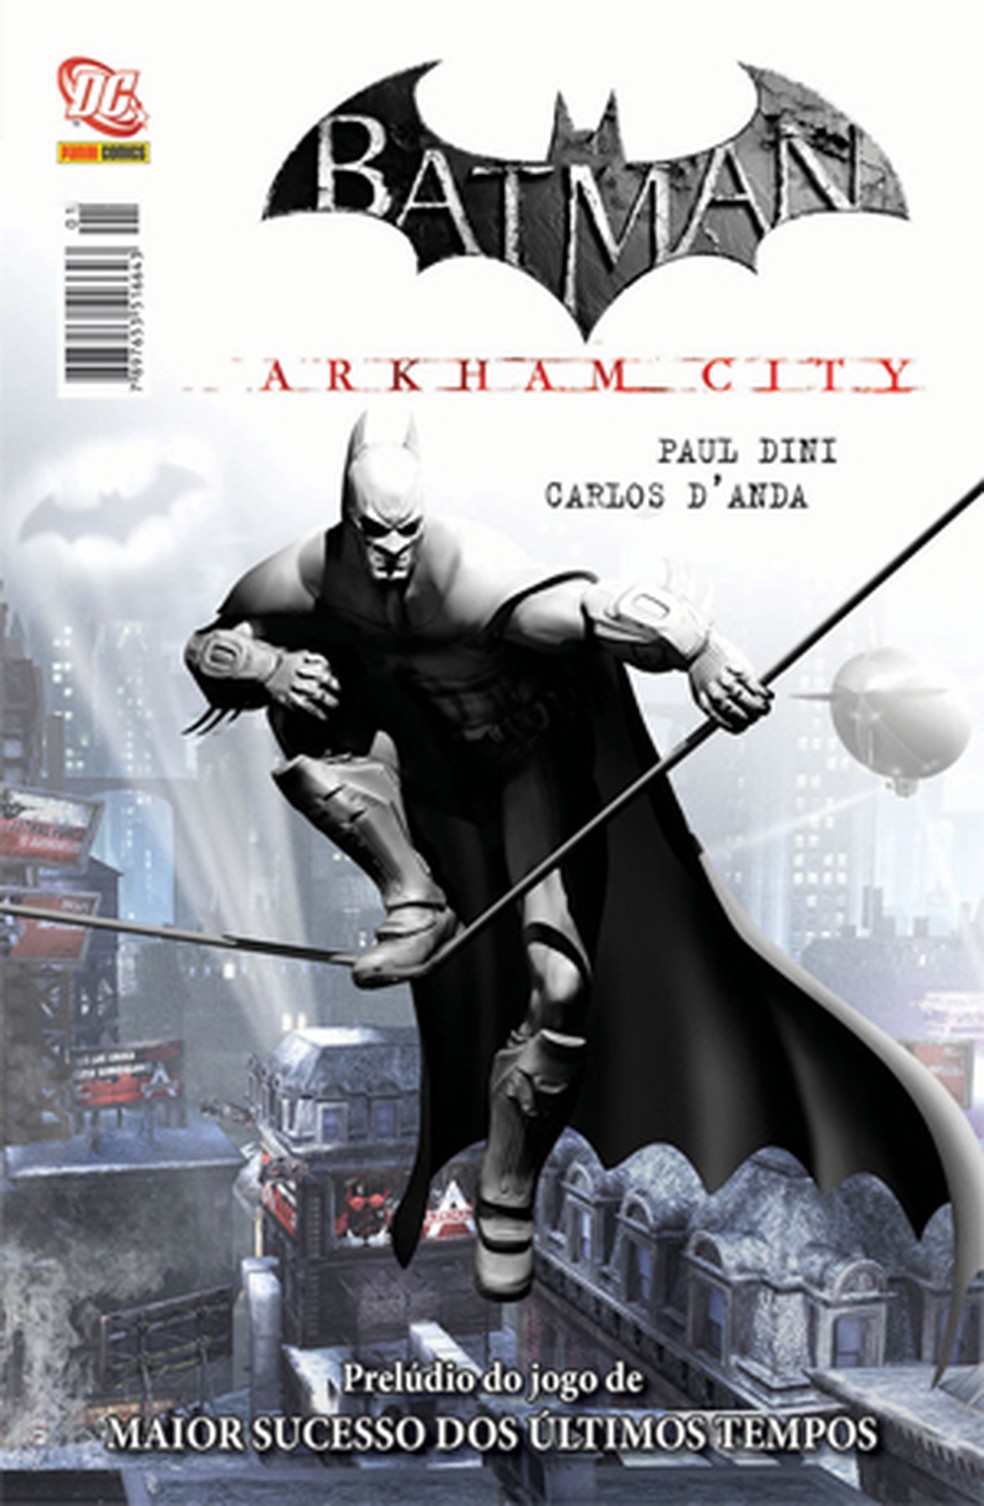 Heróis Comics: Batman Vitoriano: veja o projeto do jogo antecessor de Arkham  City